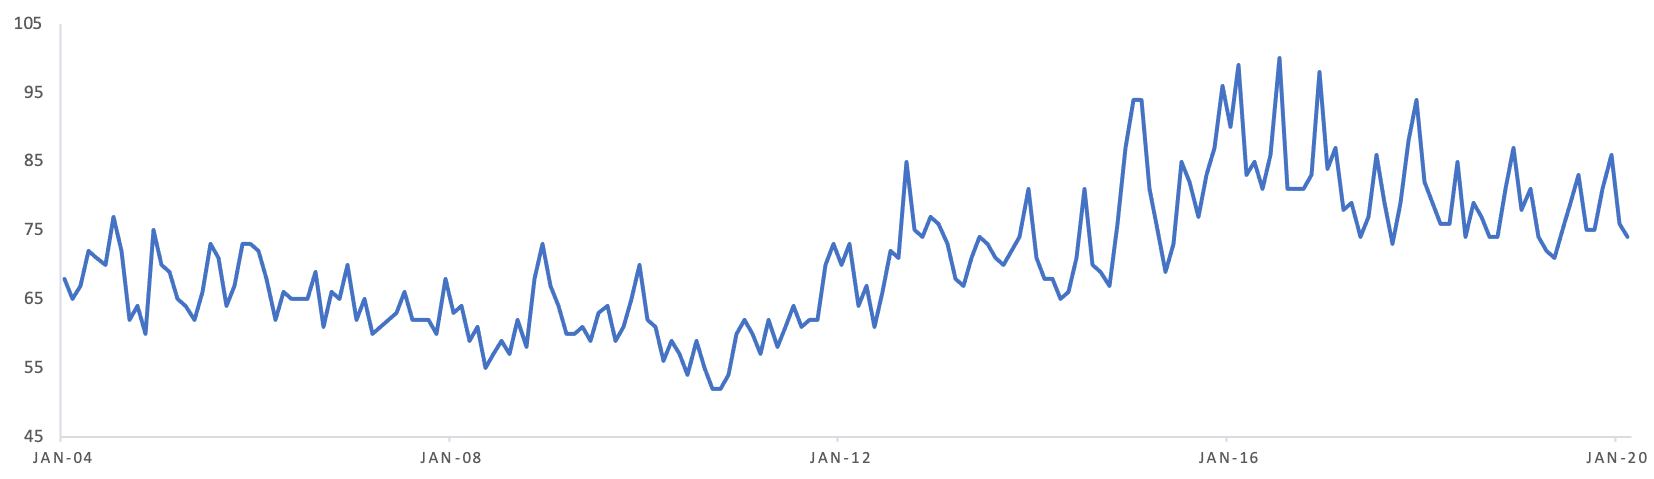 dachshund popularity chart